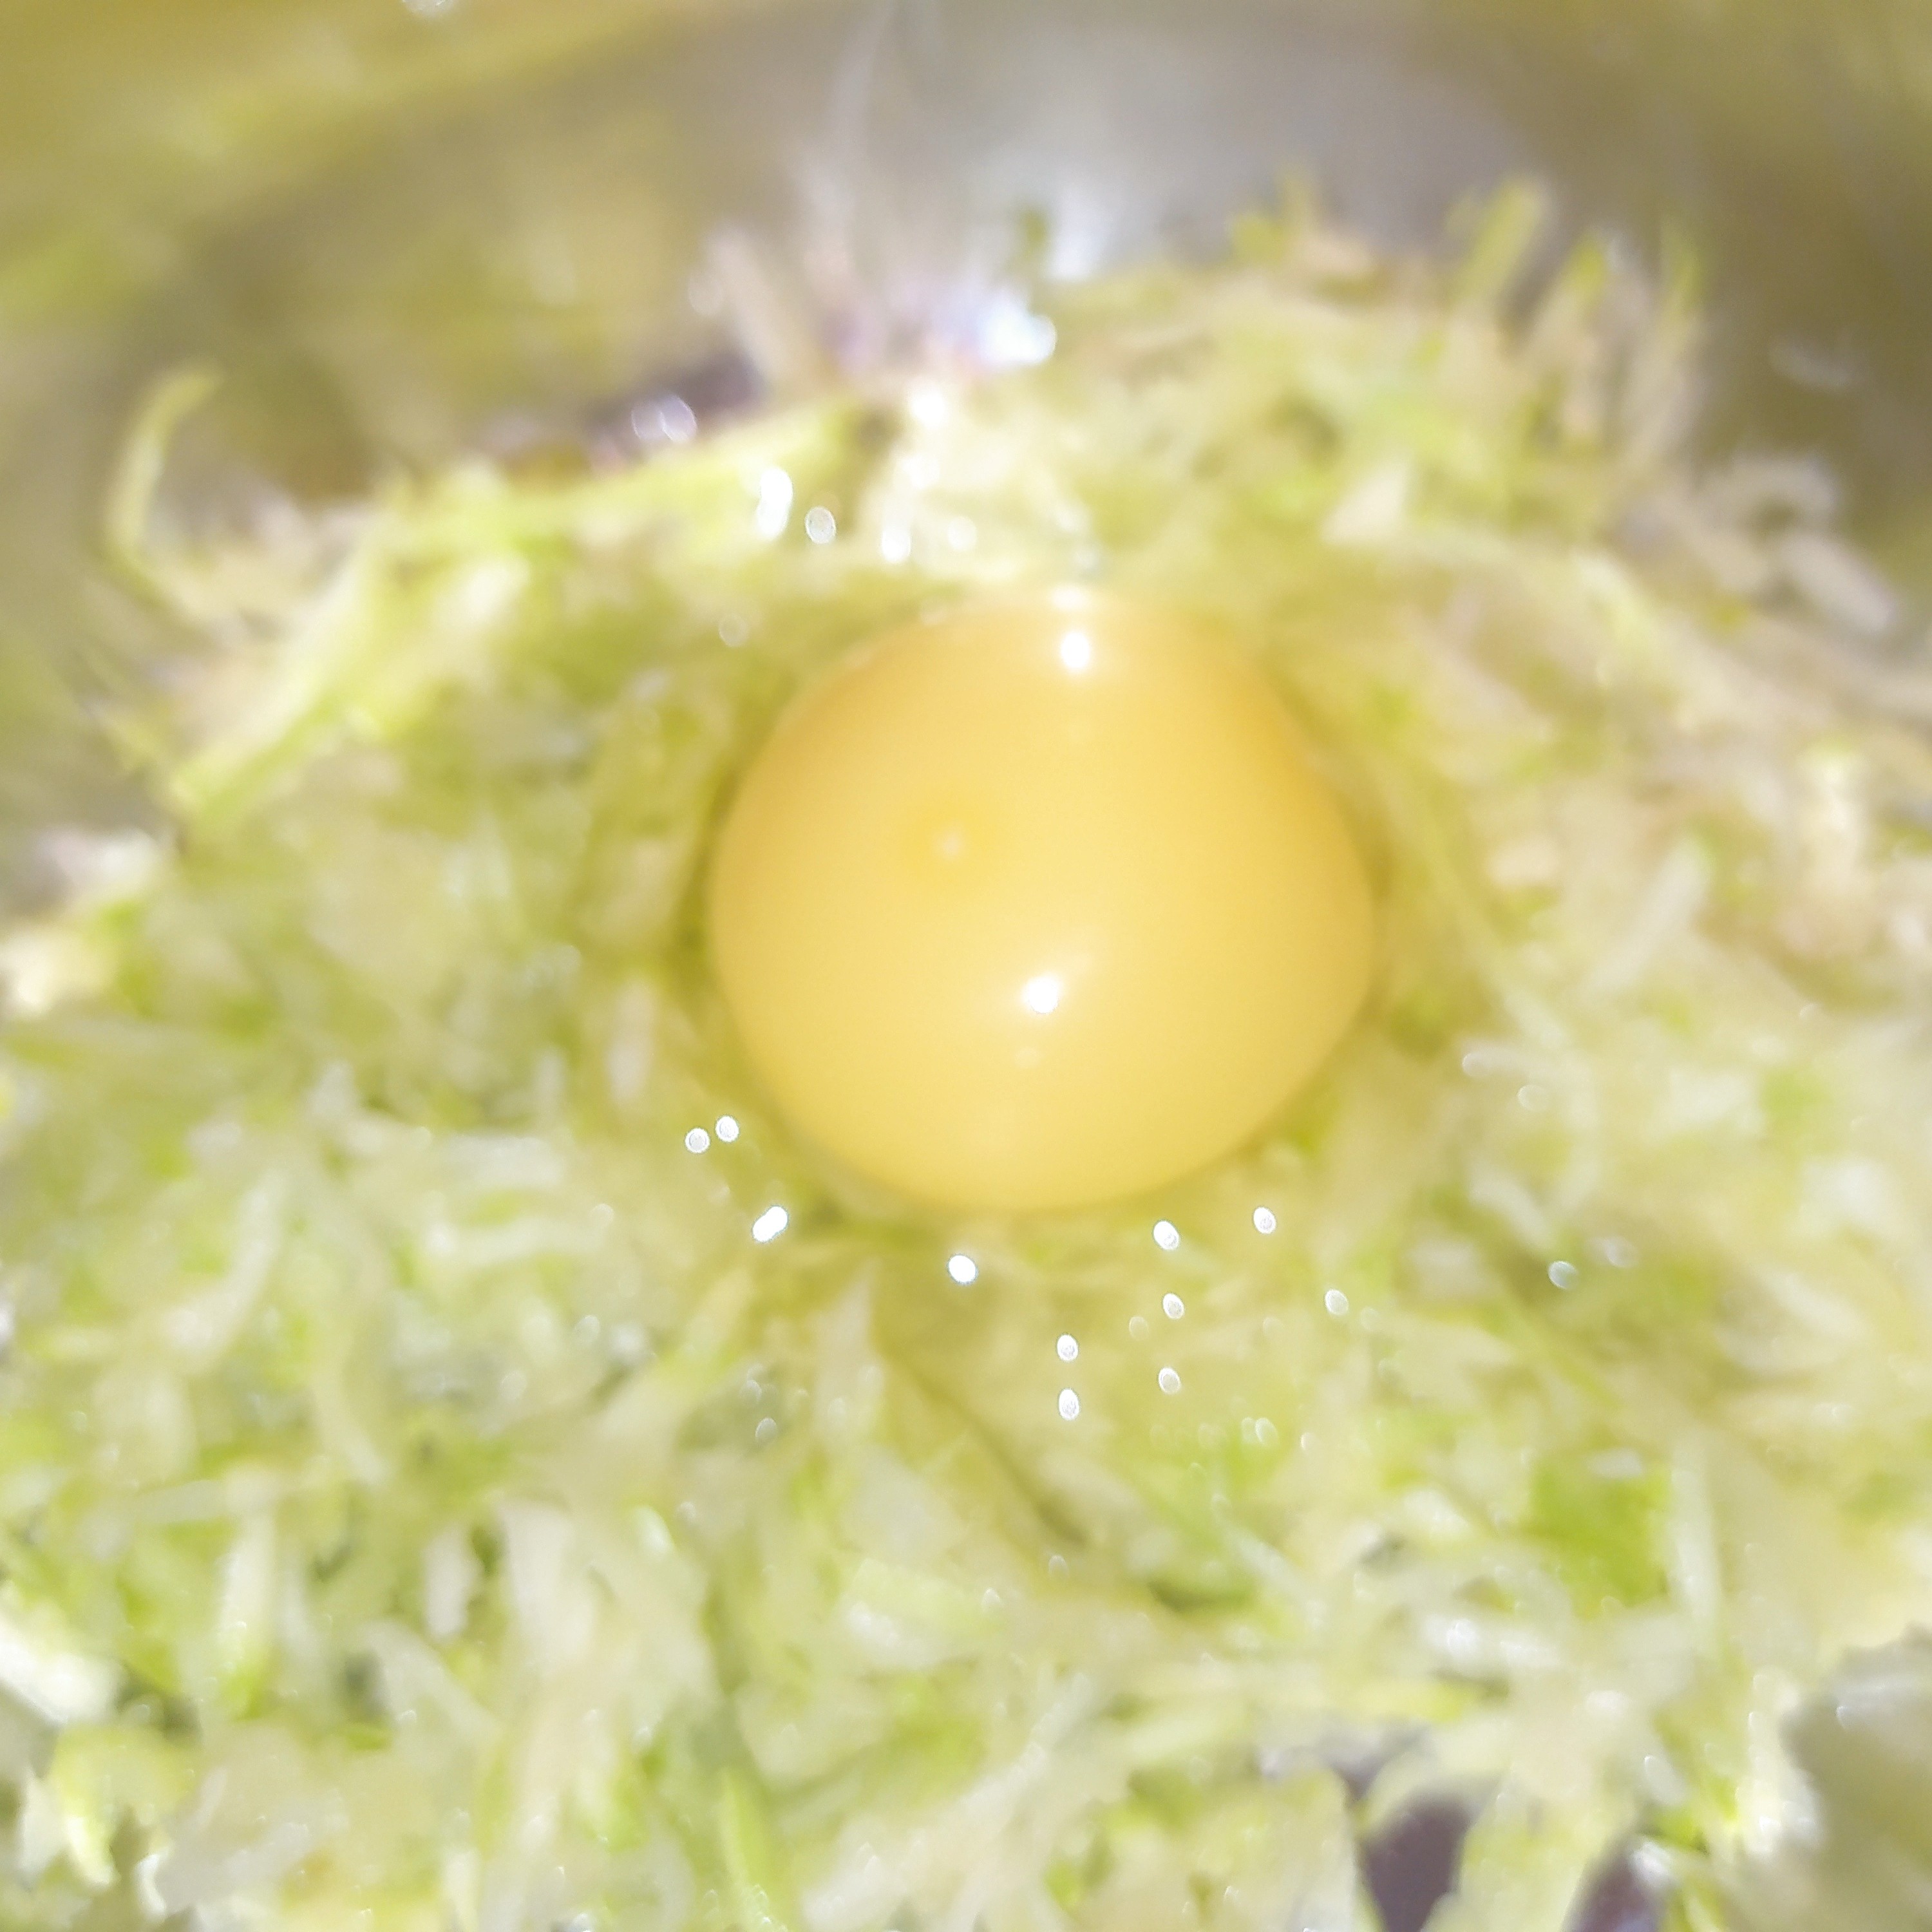 Просто натрите кабачки и добавьте яйца! Так вкусно, что готовлю каждый день летом